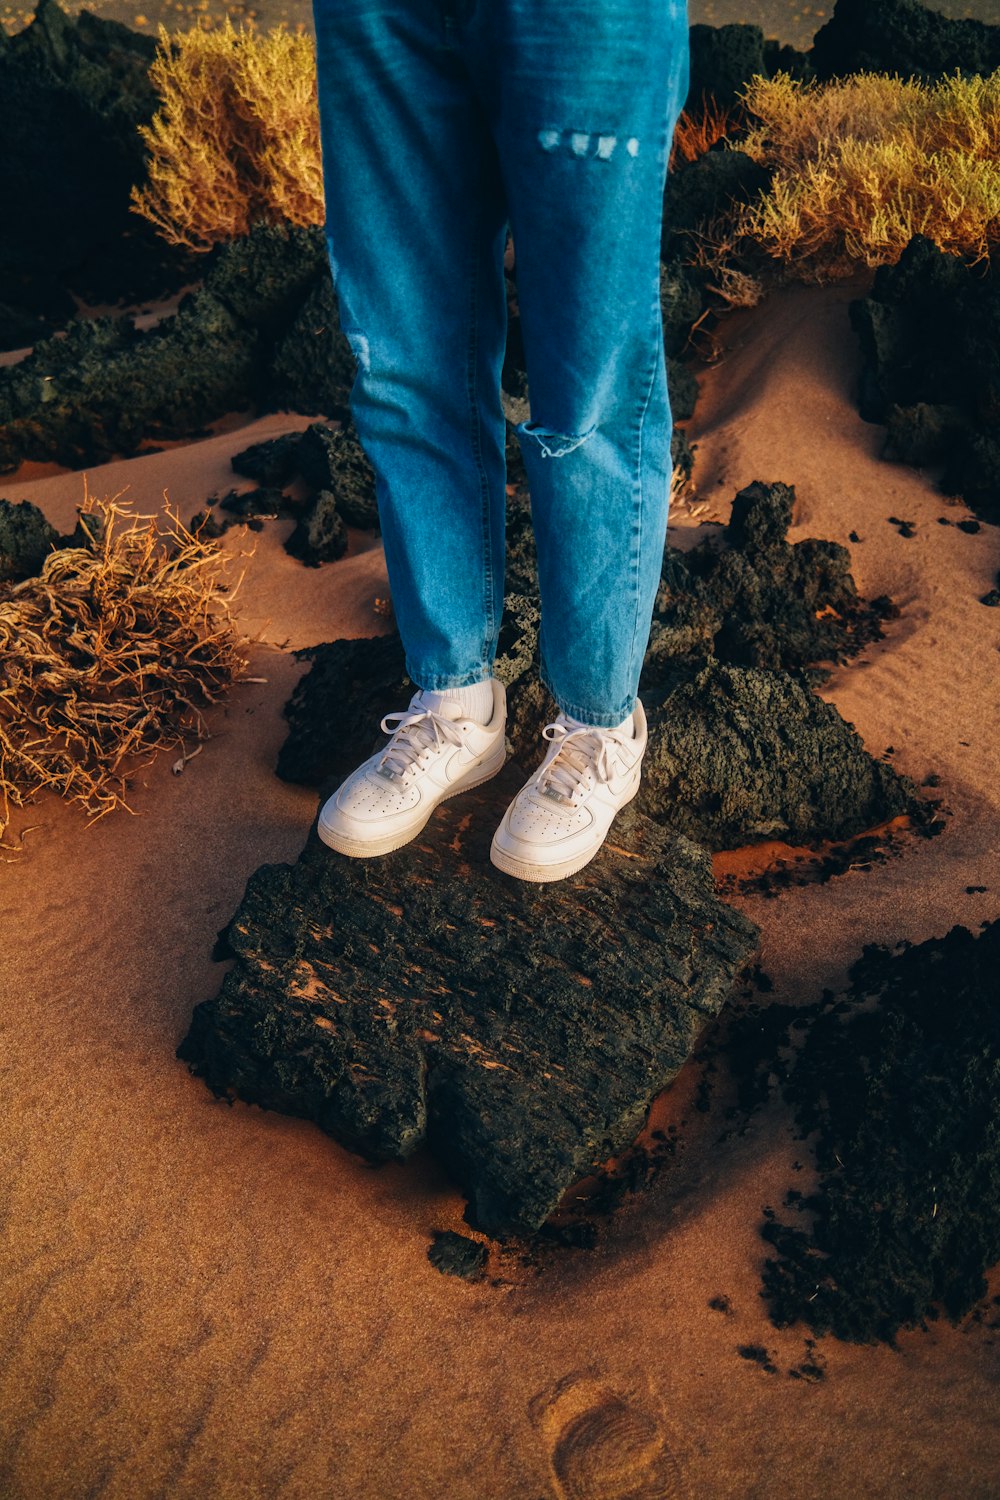 Le gambe e i piedi di una persona su una roccia